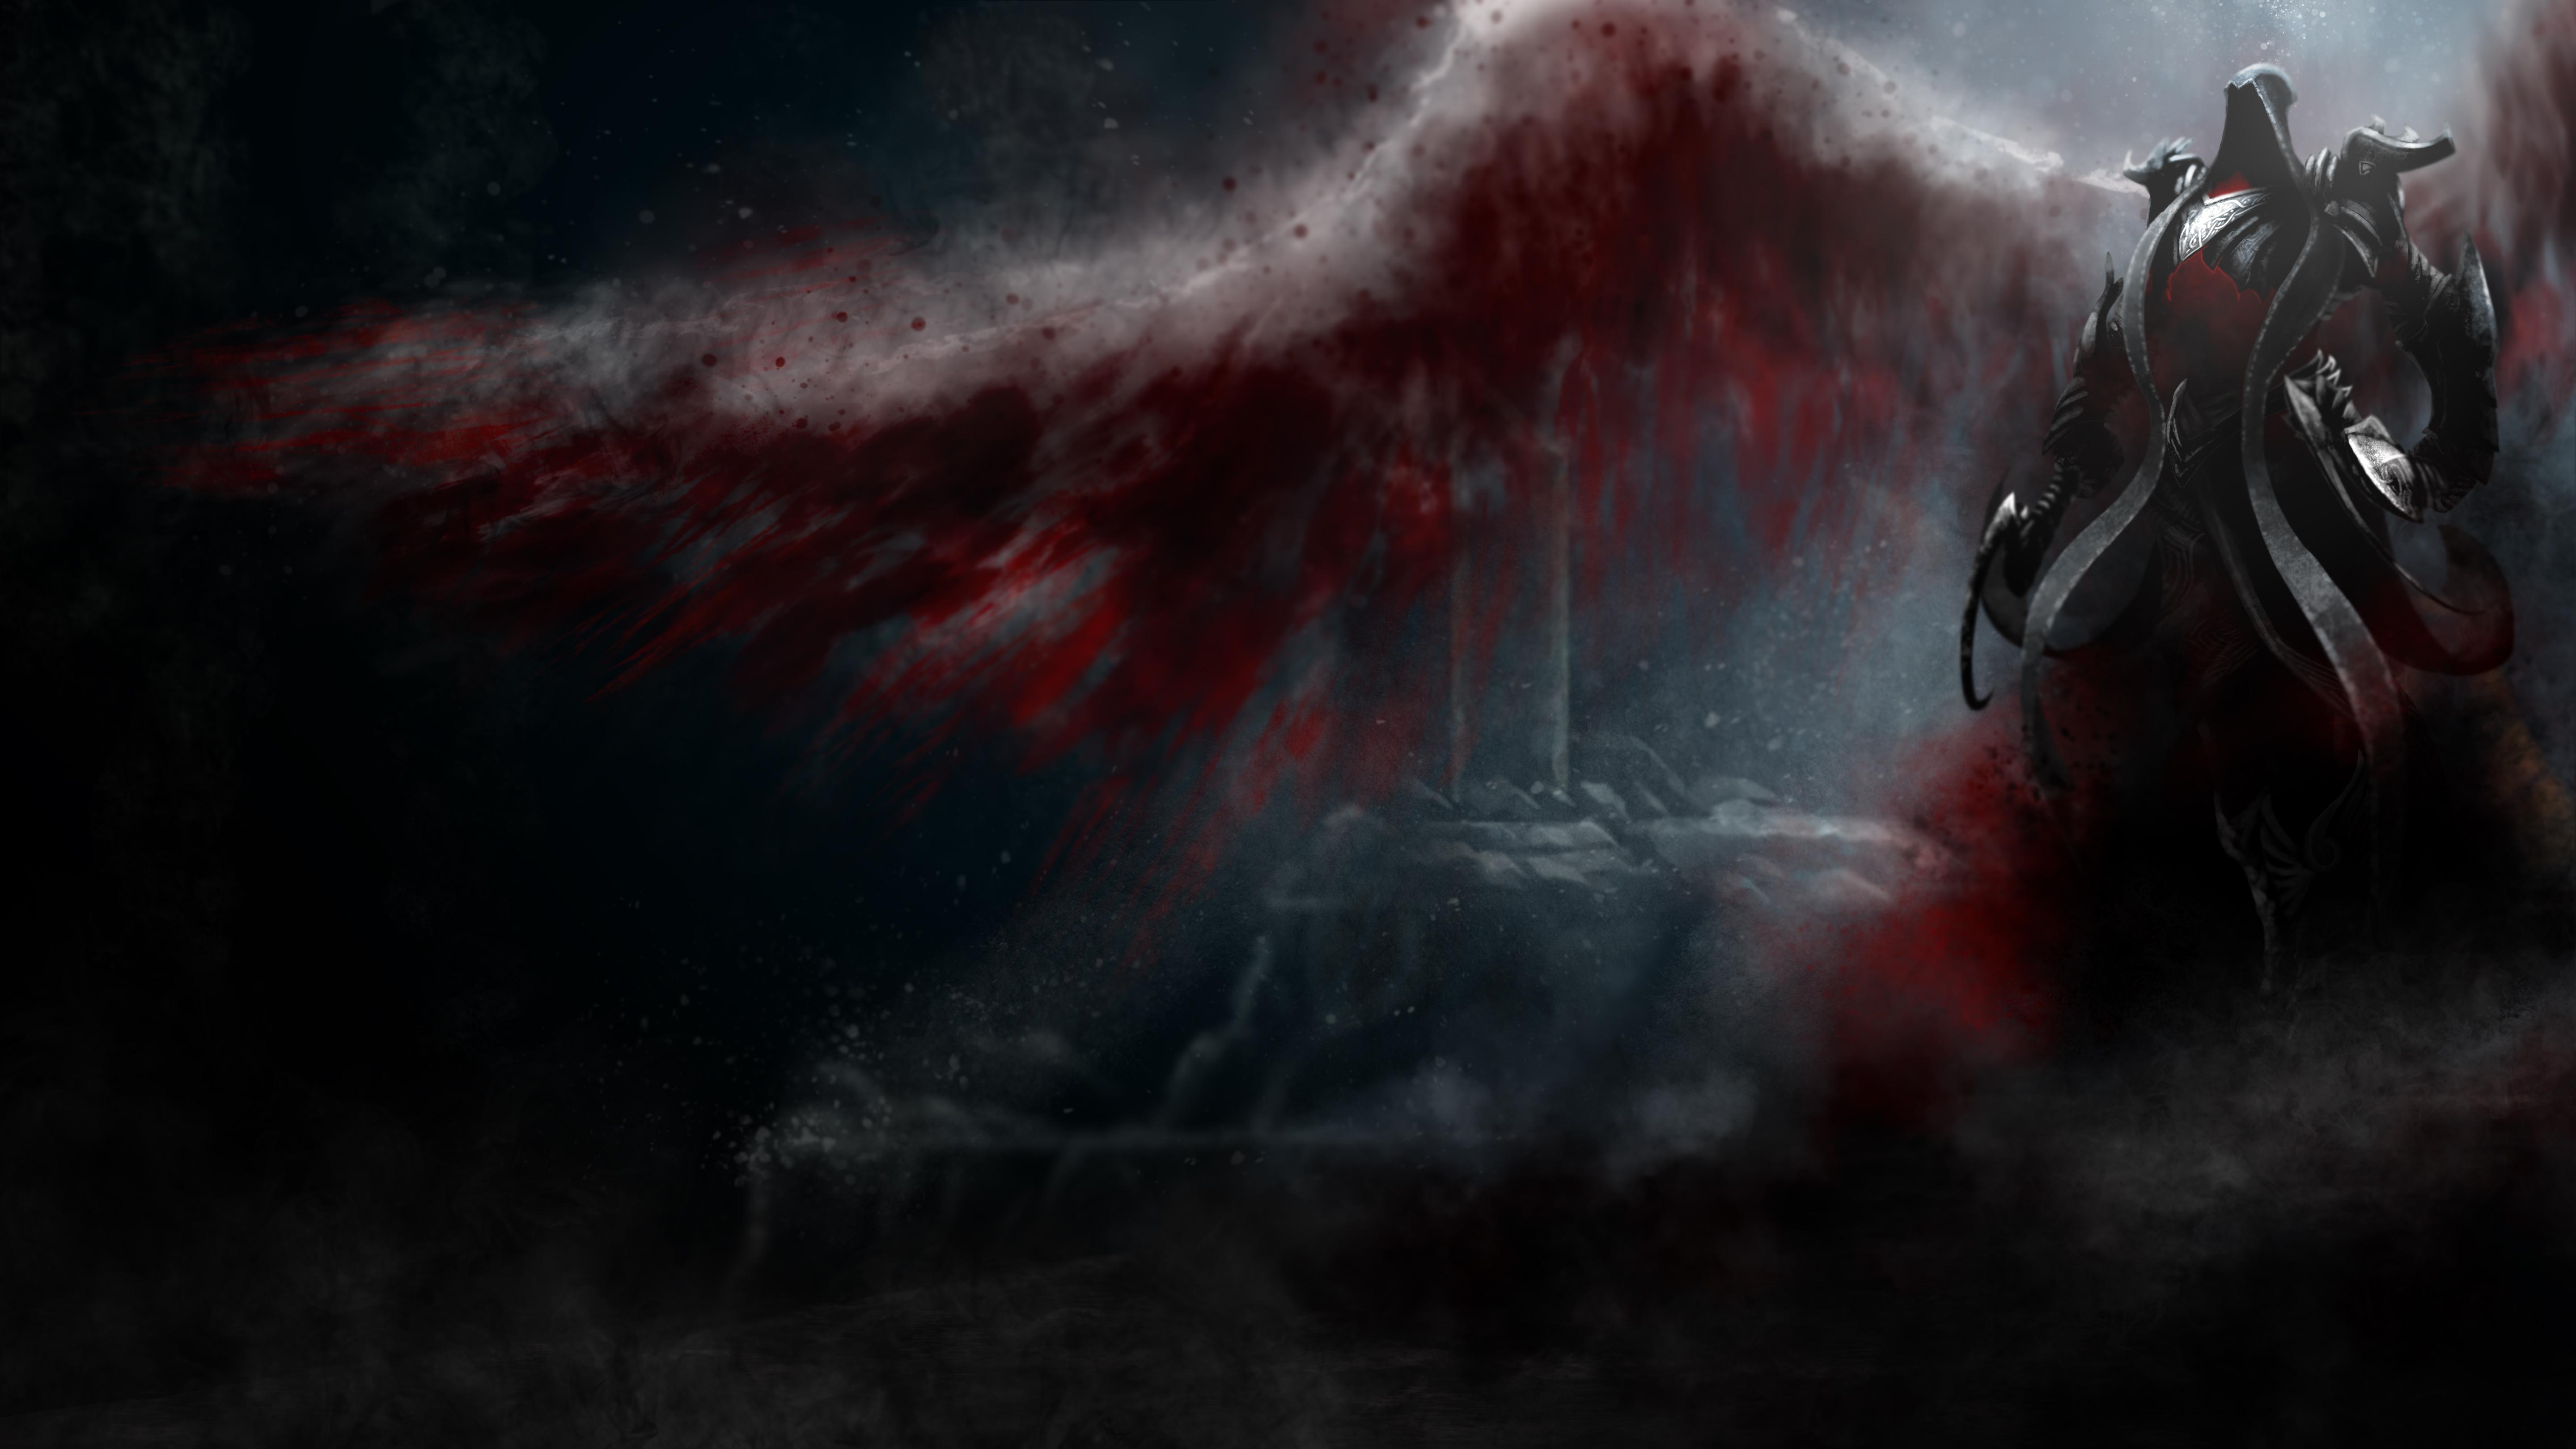 Video Game Diablo Iii Reaper Of Souls 4k Ultra HD Wallpaper By